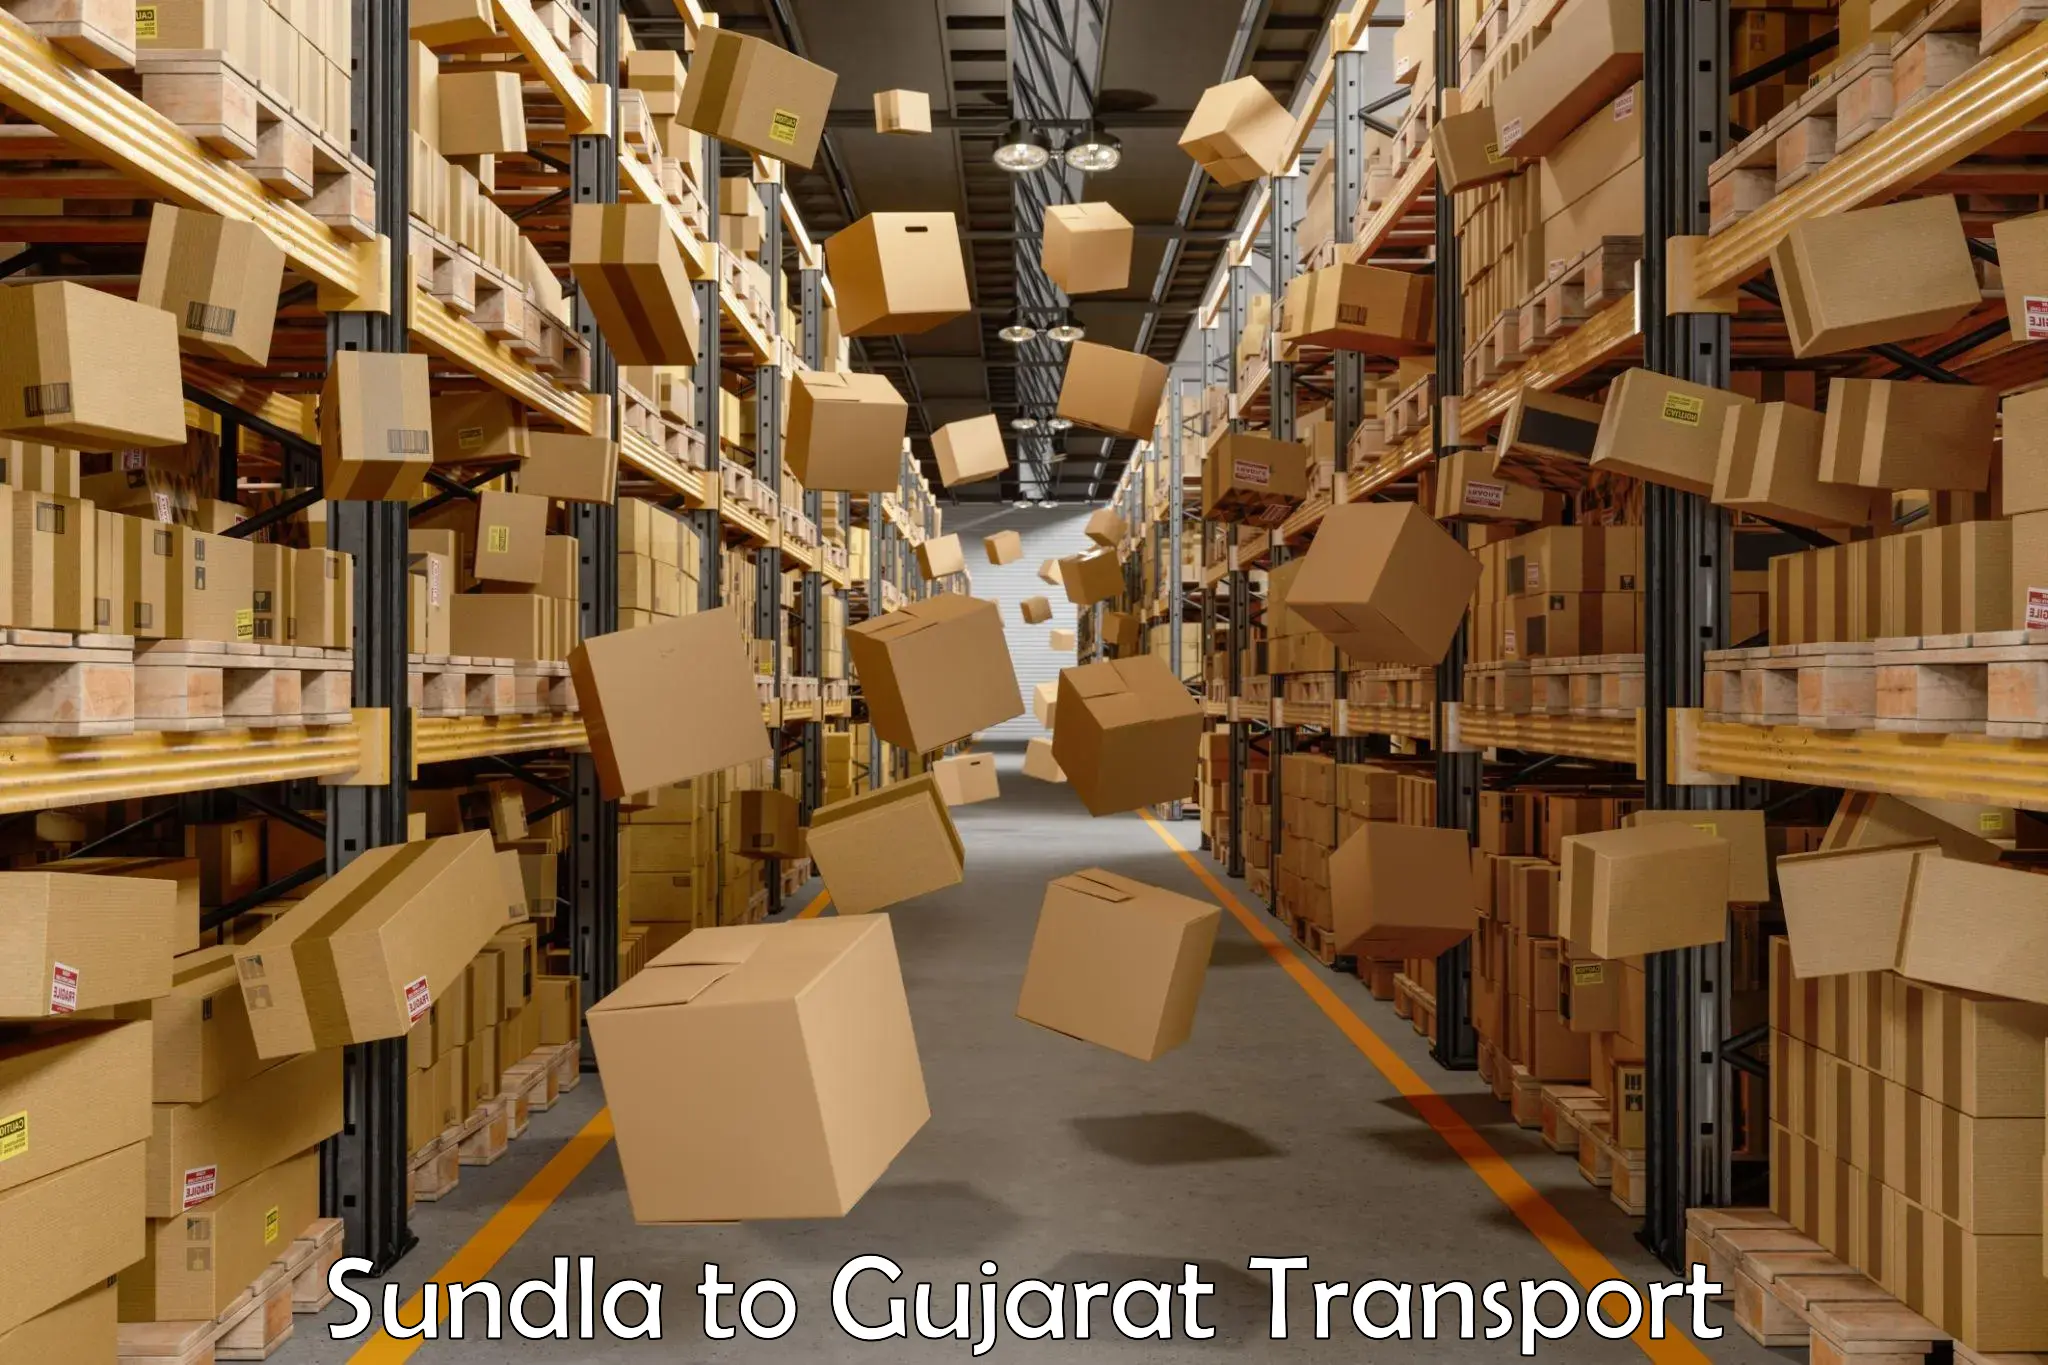 Nearby transport service Sundla to Gujarat